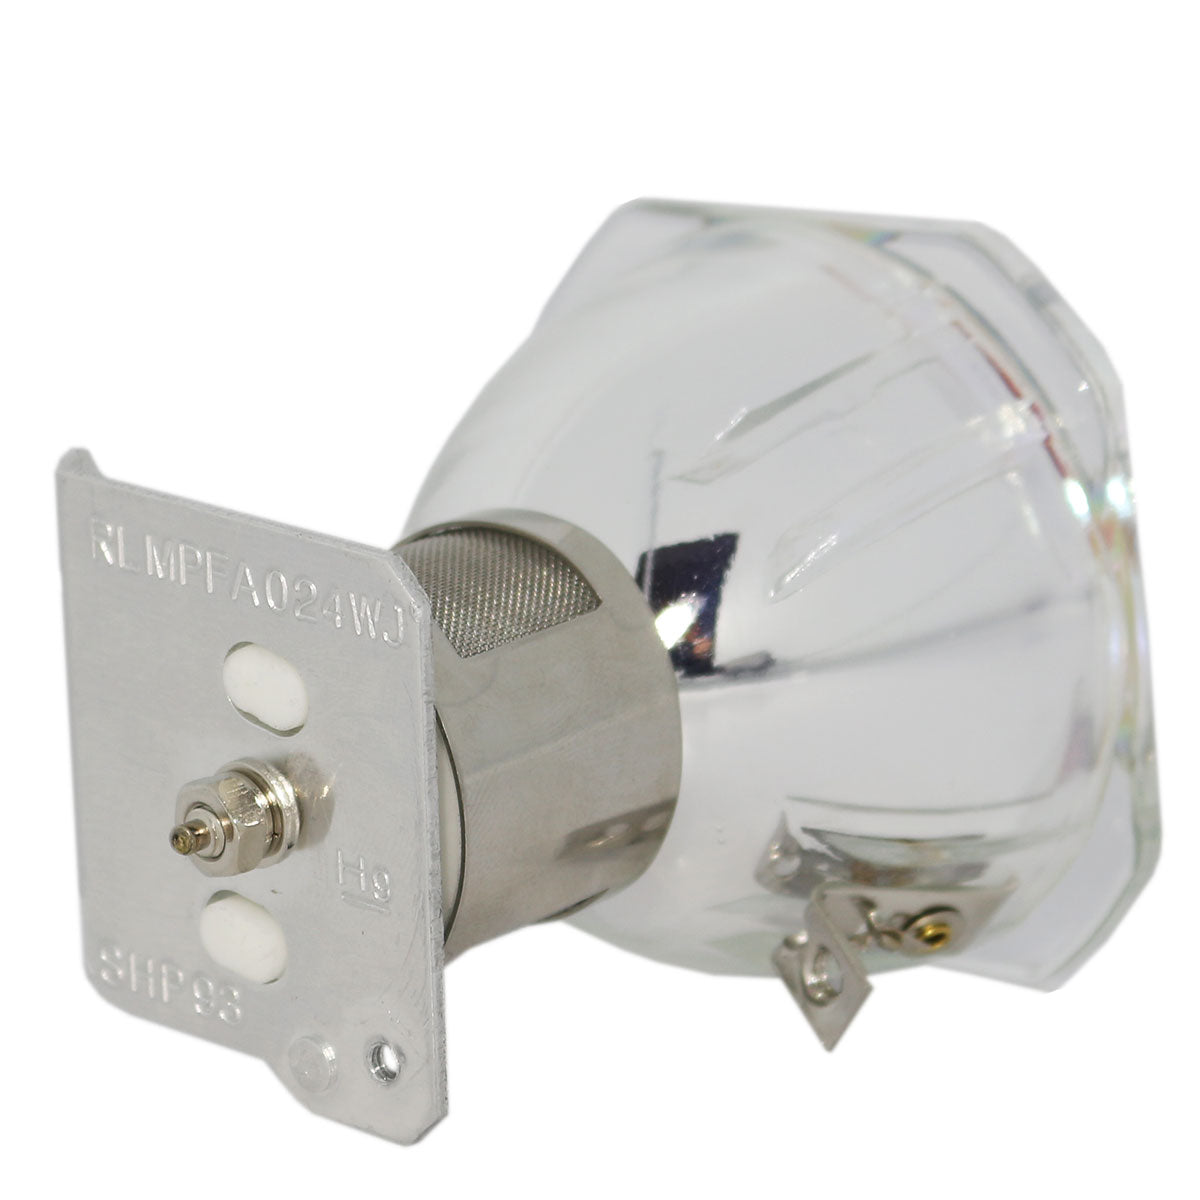 Sharp AN-XR20LP/1 Phoenix Projector Bare Lamp